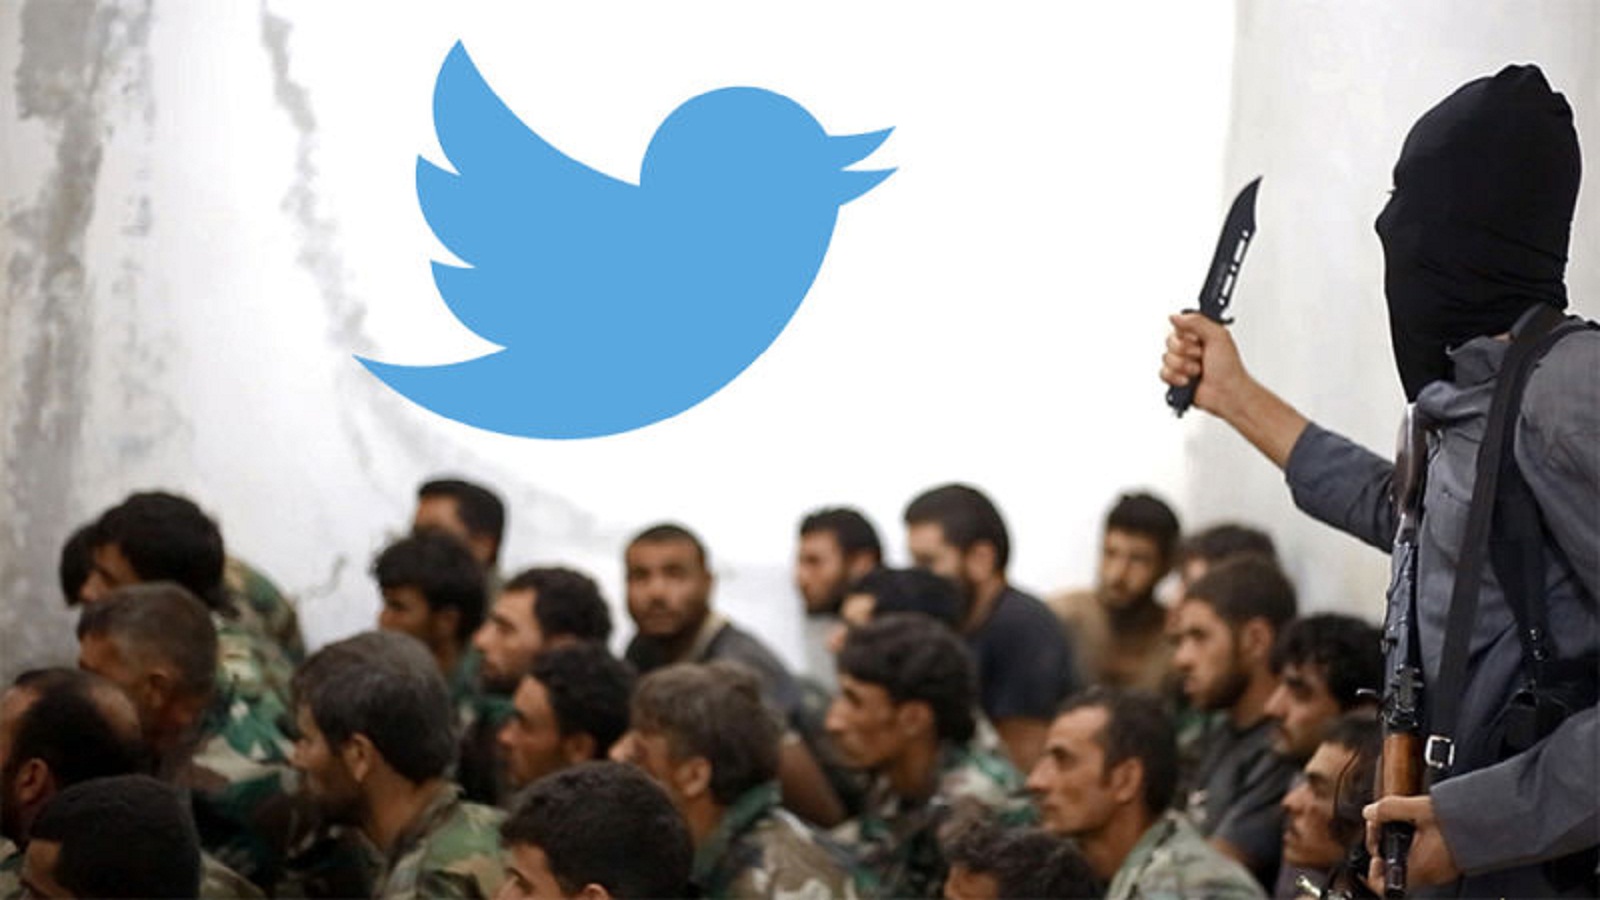 الباحثة ألكسندرا سيغل لـ"المدن":تويتر العربي في زمن "مُعاداة" الشيعة